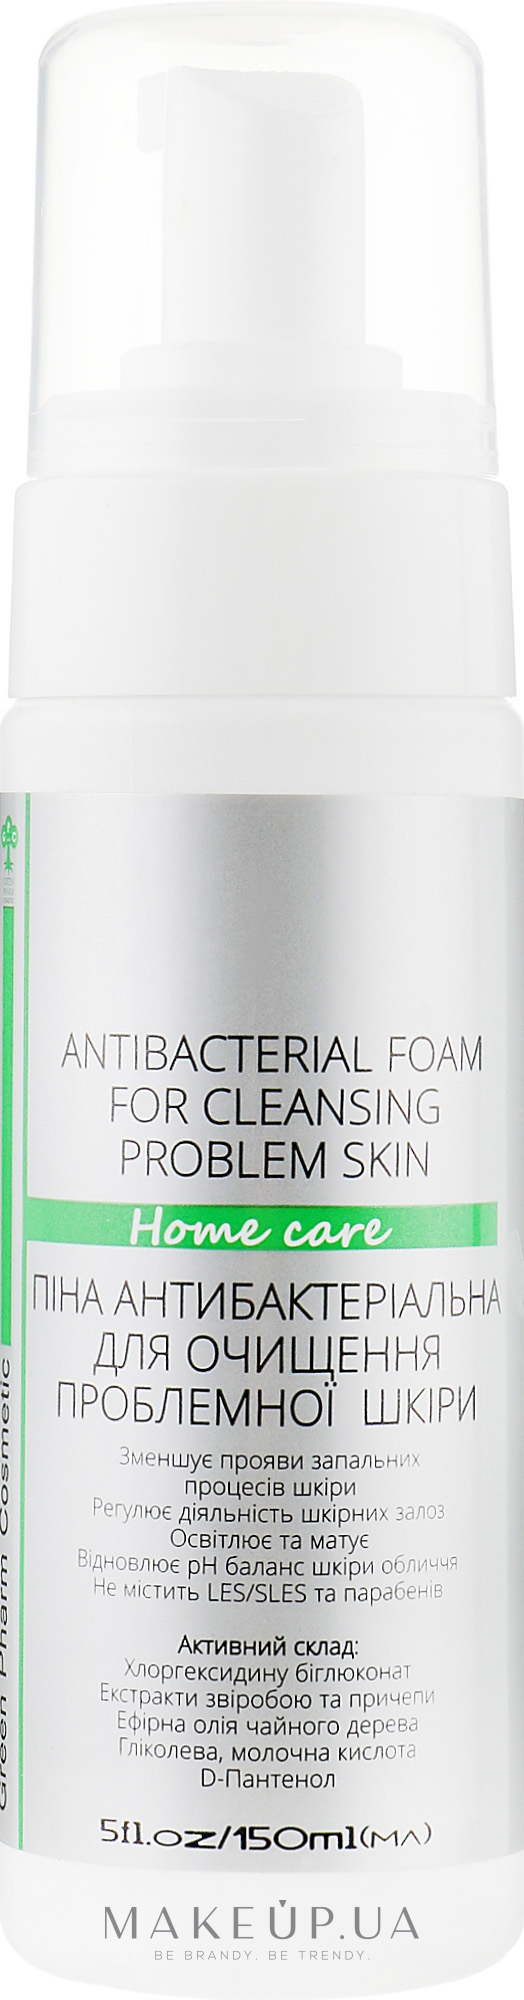 Піна антибактеріальна для очищення проблемної шкіри - Green Pharm Cosmetic Antibacterial Foam РН 3,5 — фото 150ml